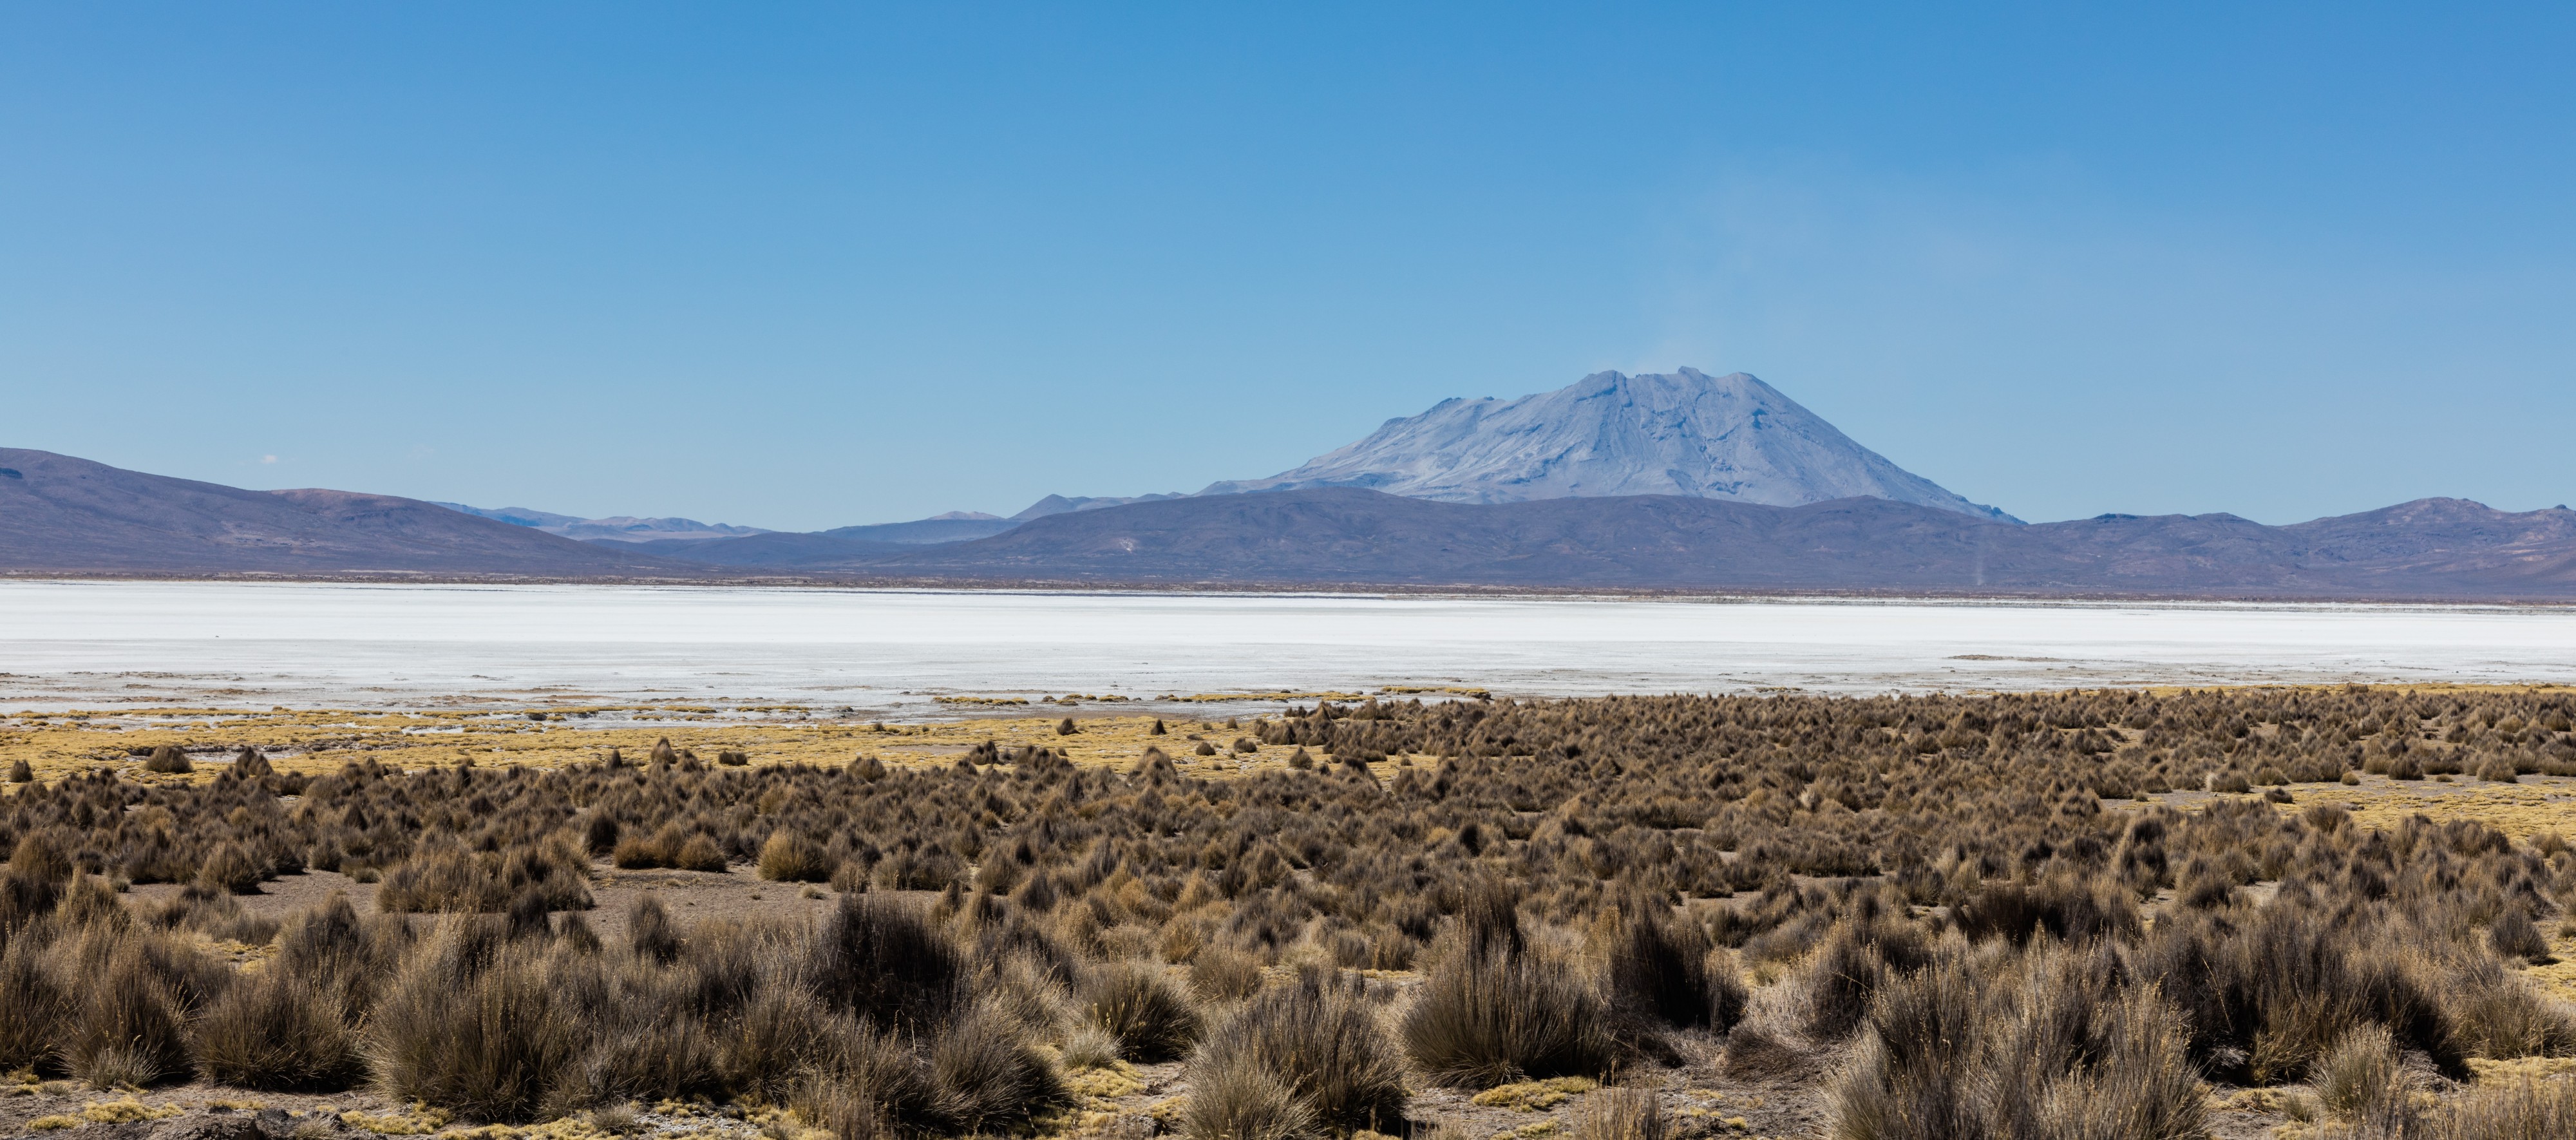 Volcán Ubinas y Laguna de Salinas, Arequipa, Perú, 2015-08-02, DD 48